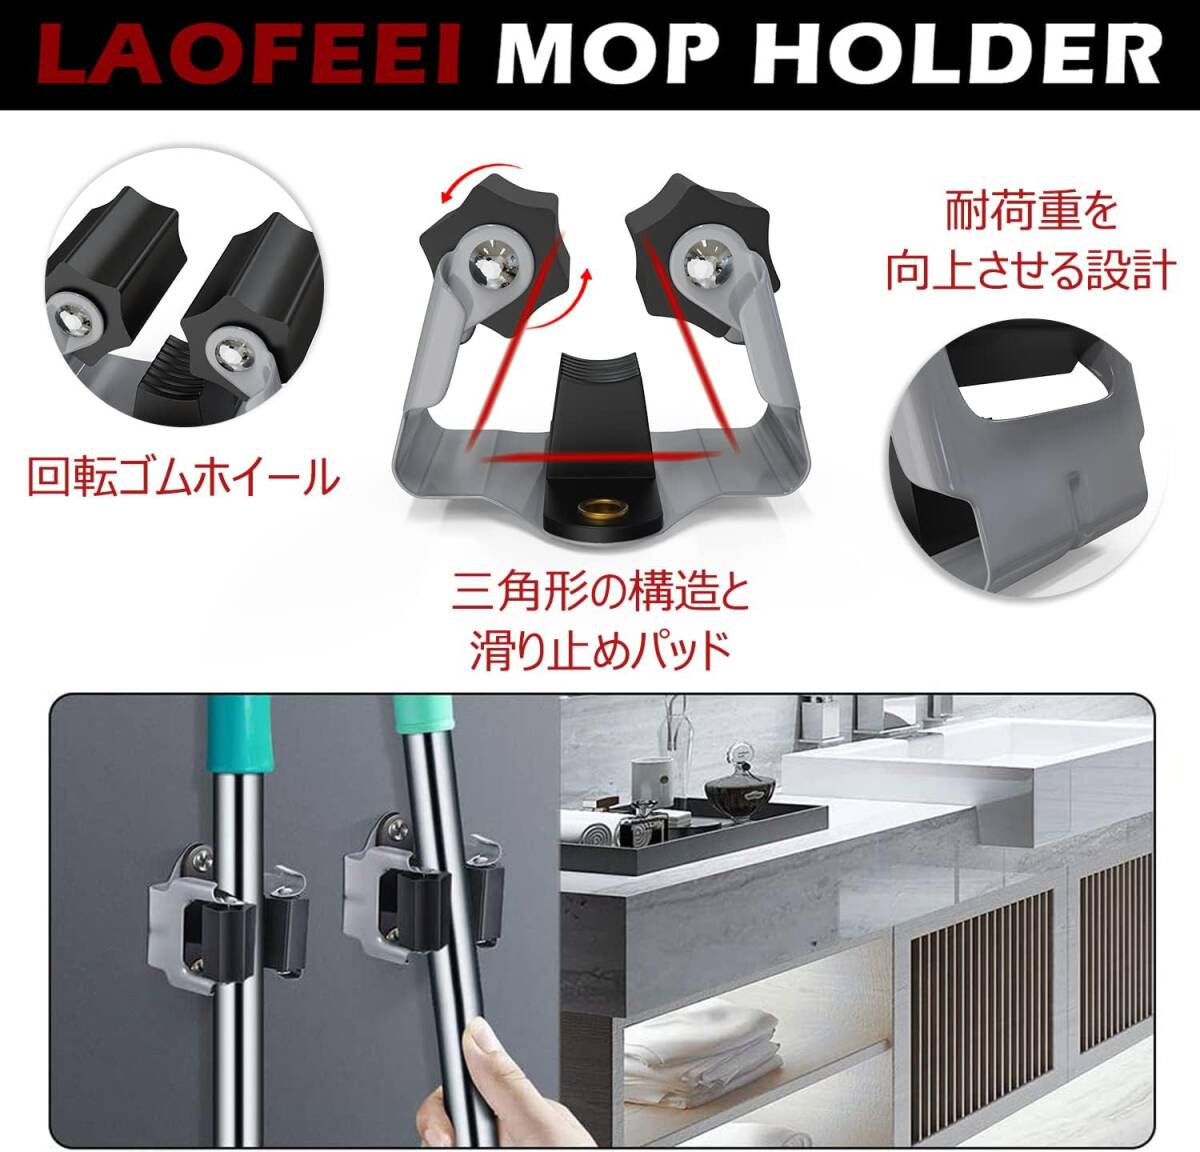 laofeei モップホルダー ほうきホルダー 10個セット 壁掛けモップハンガー ローラーフック トイレ収納 清掃用具ツール収納の画像5